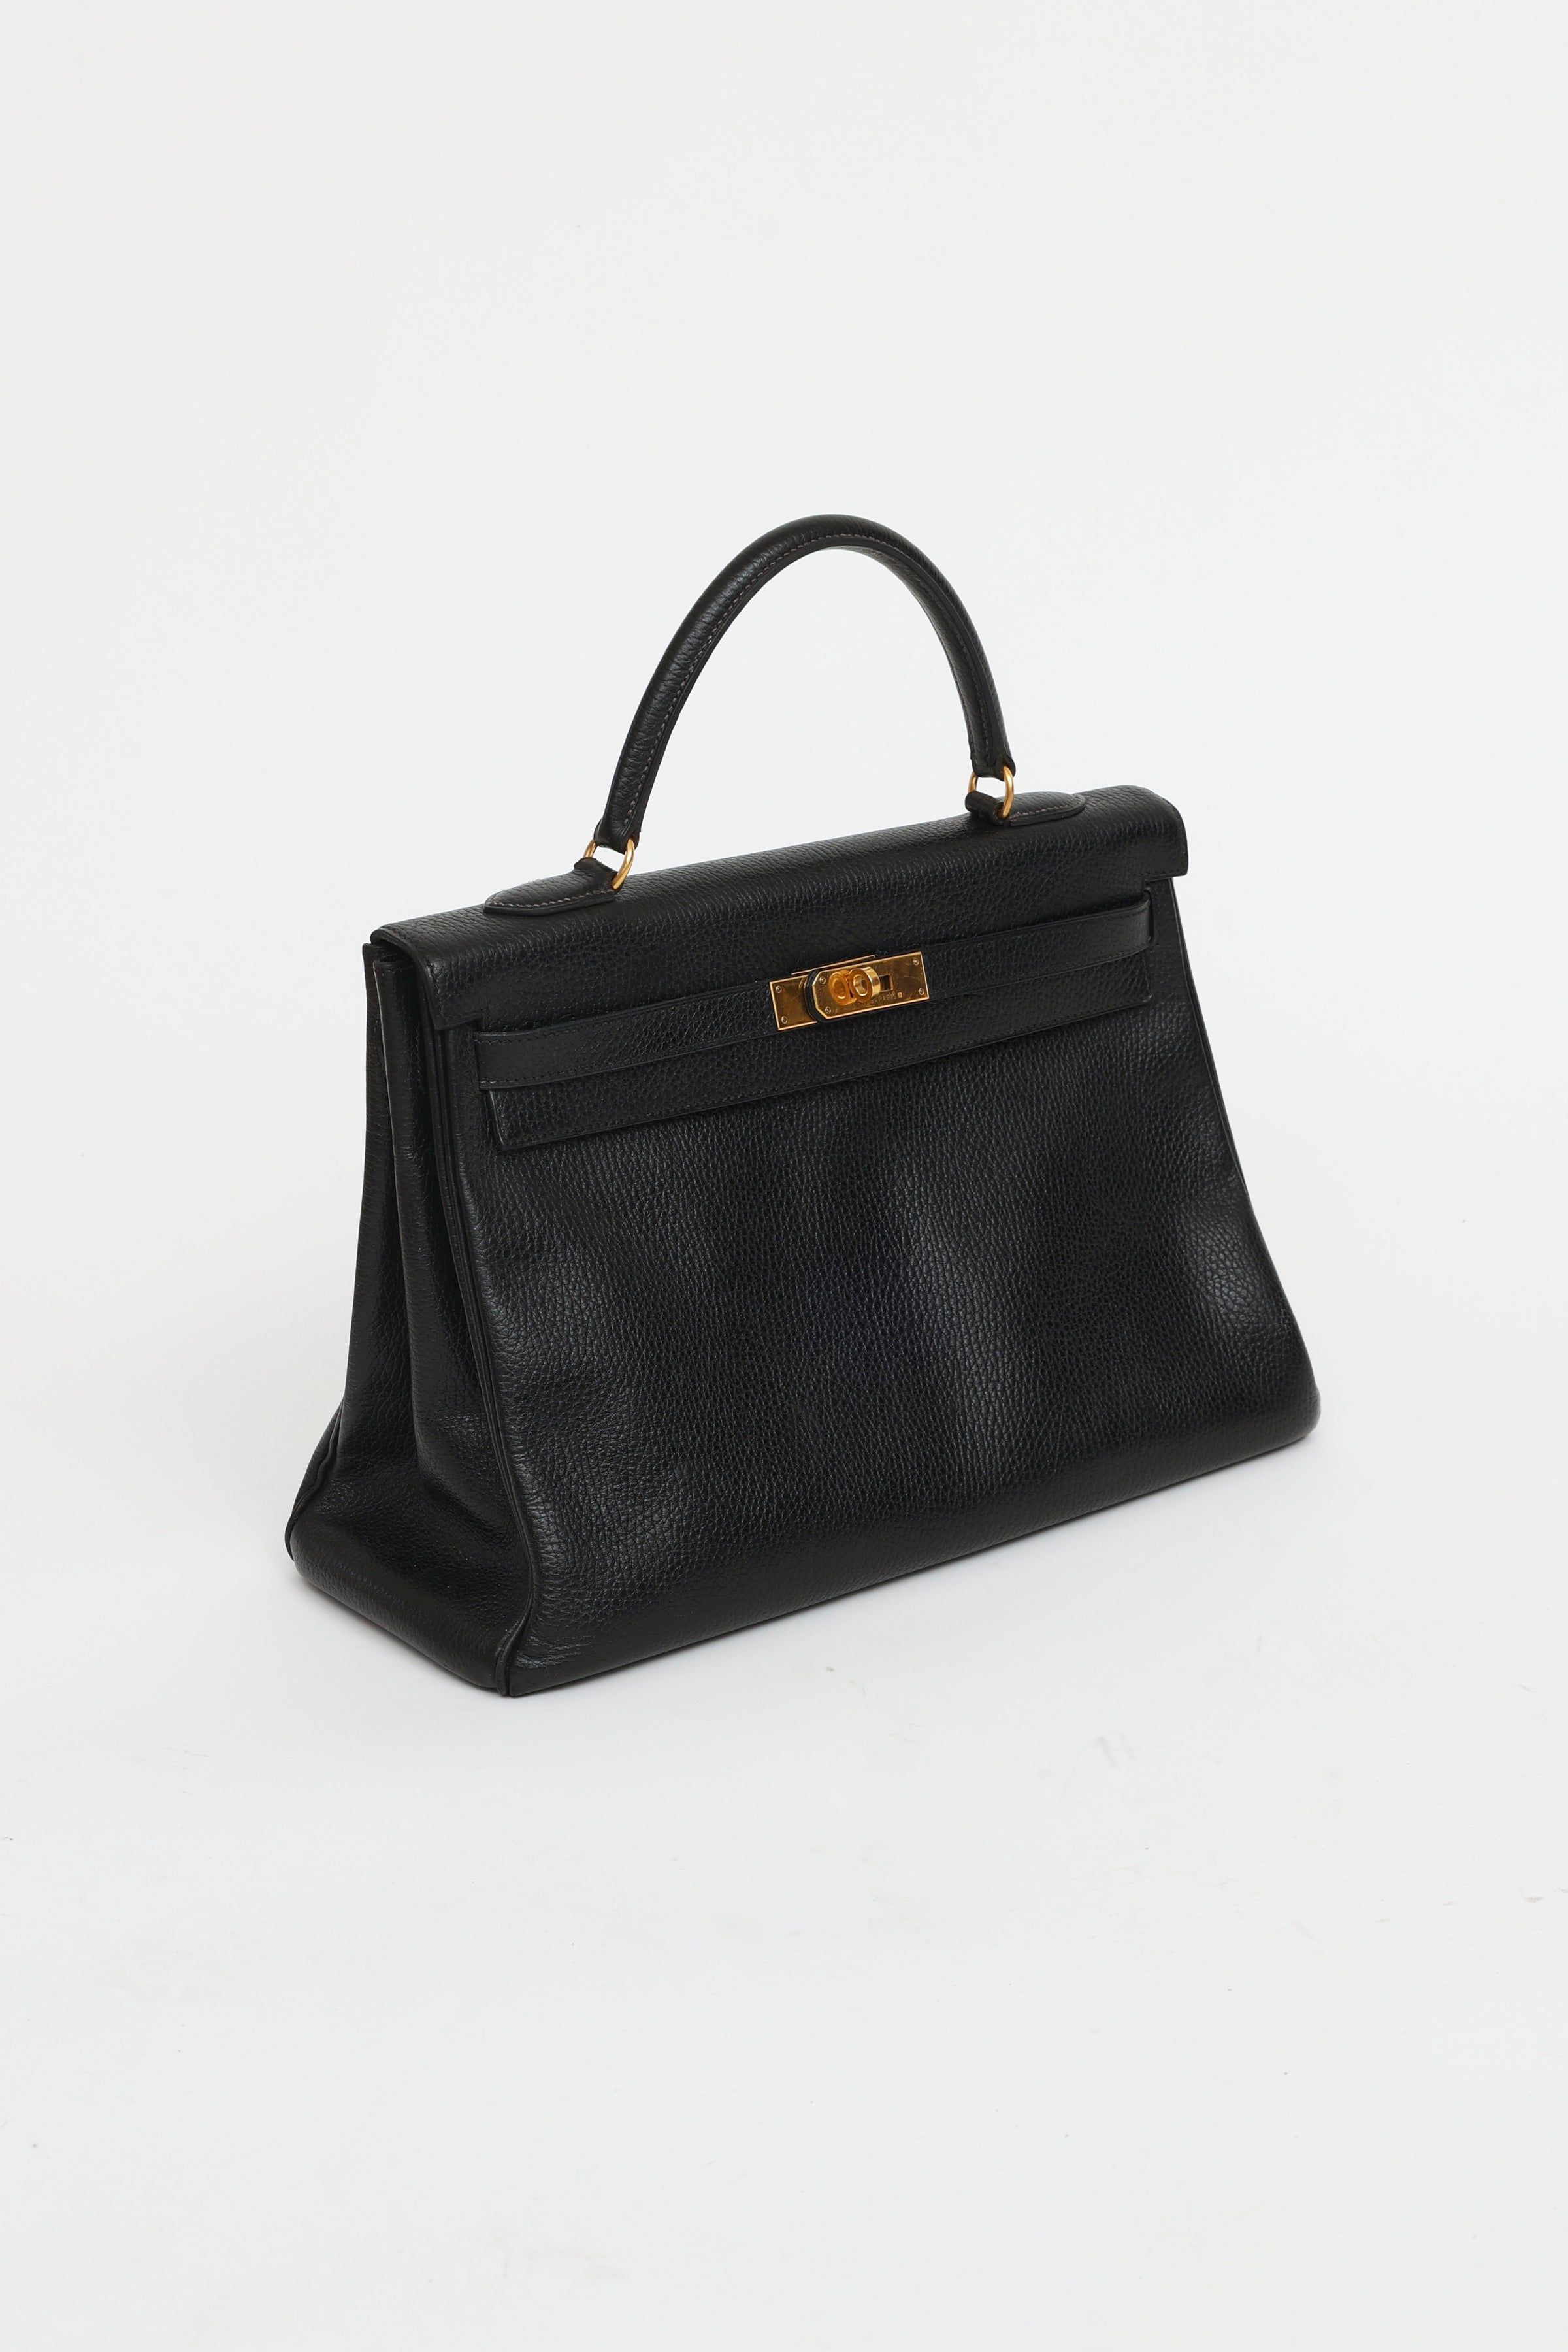 Hermes Kelly Handbag Black Ardennes with Gold Hardware 32 Black